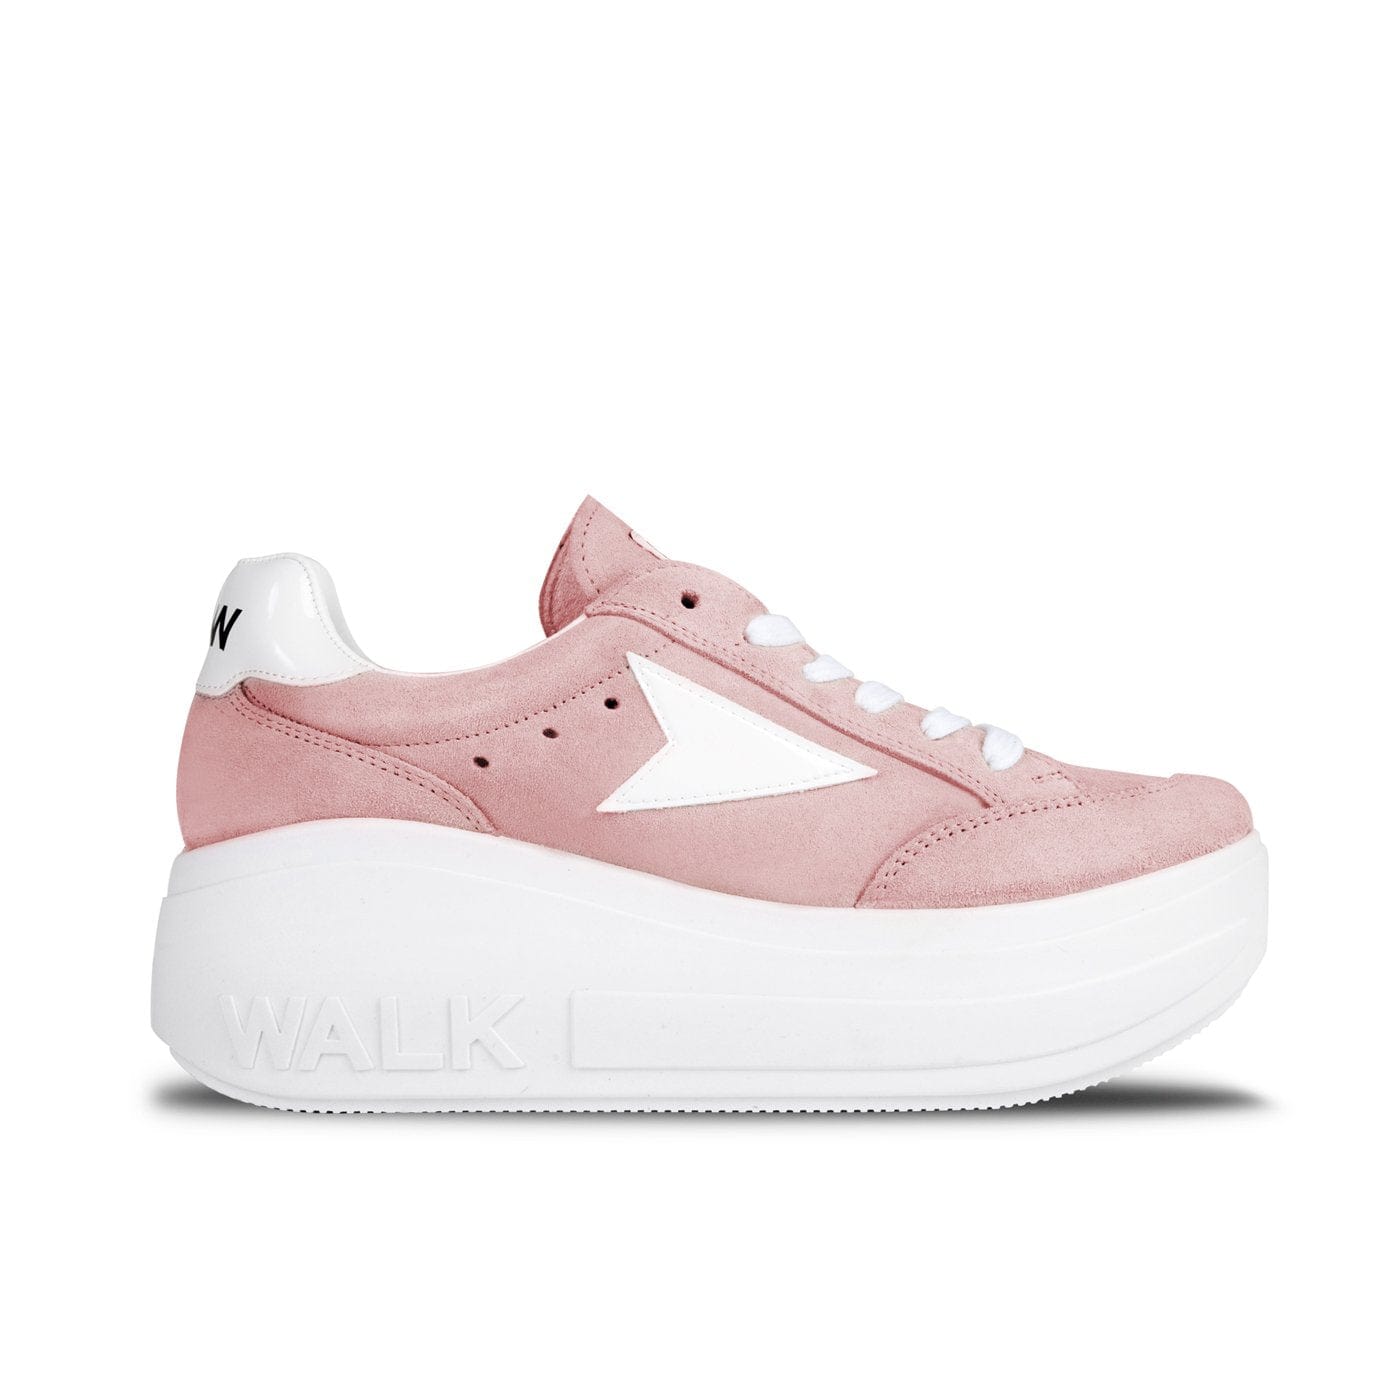 Sneakers Wicker Platform Pink Pale